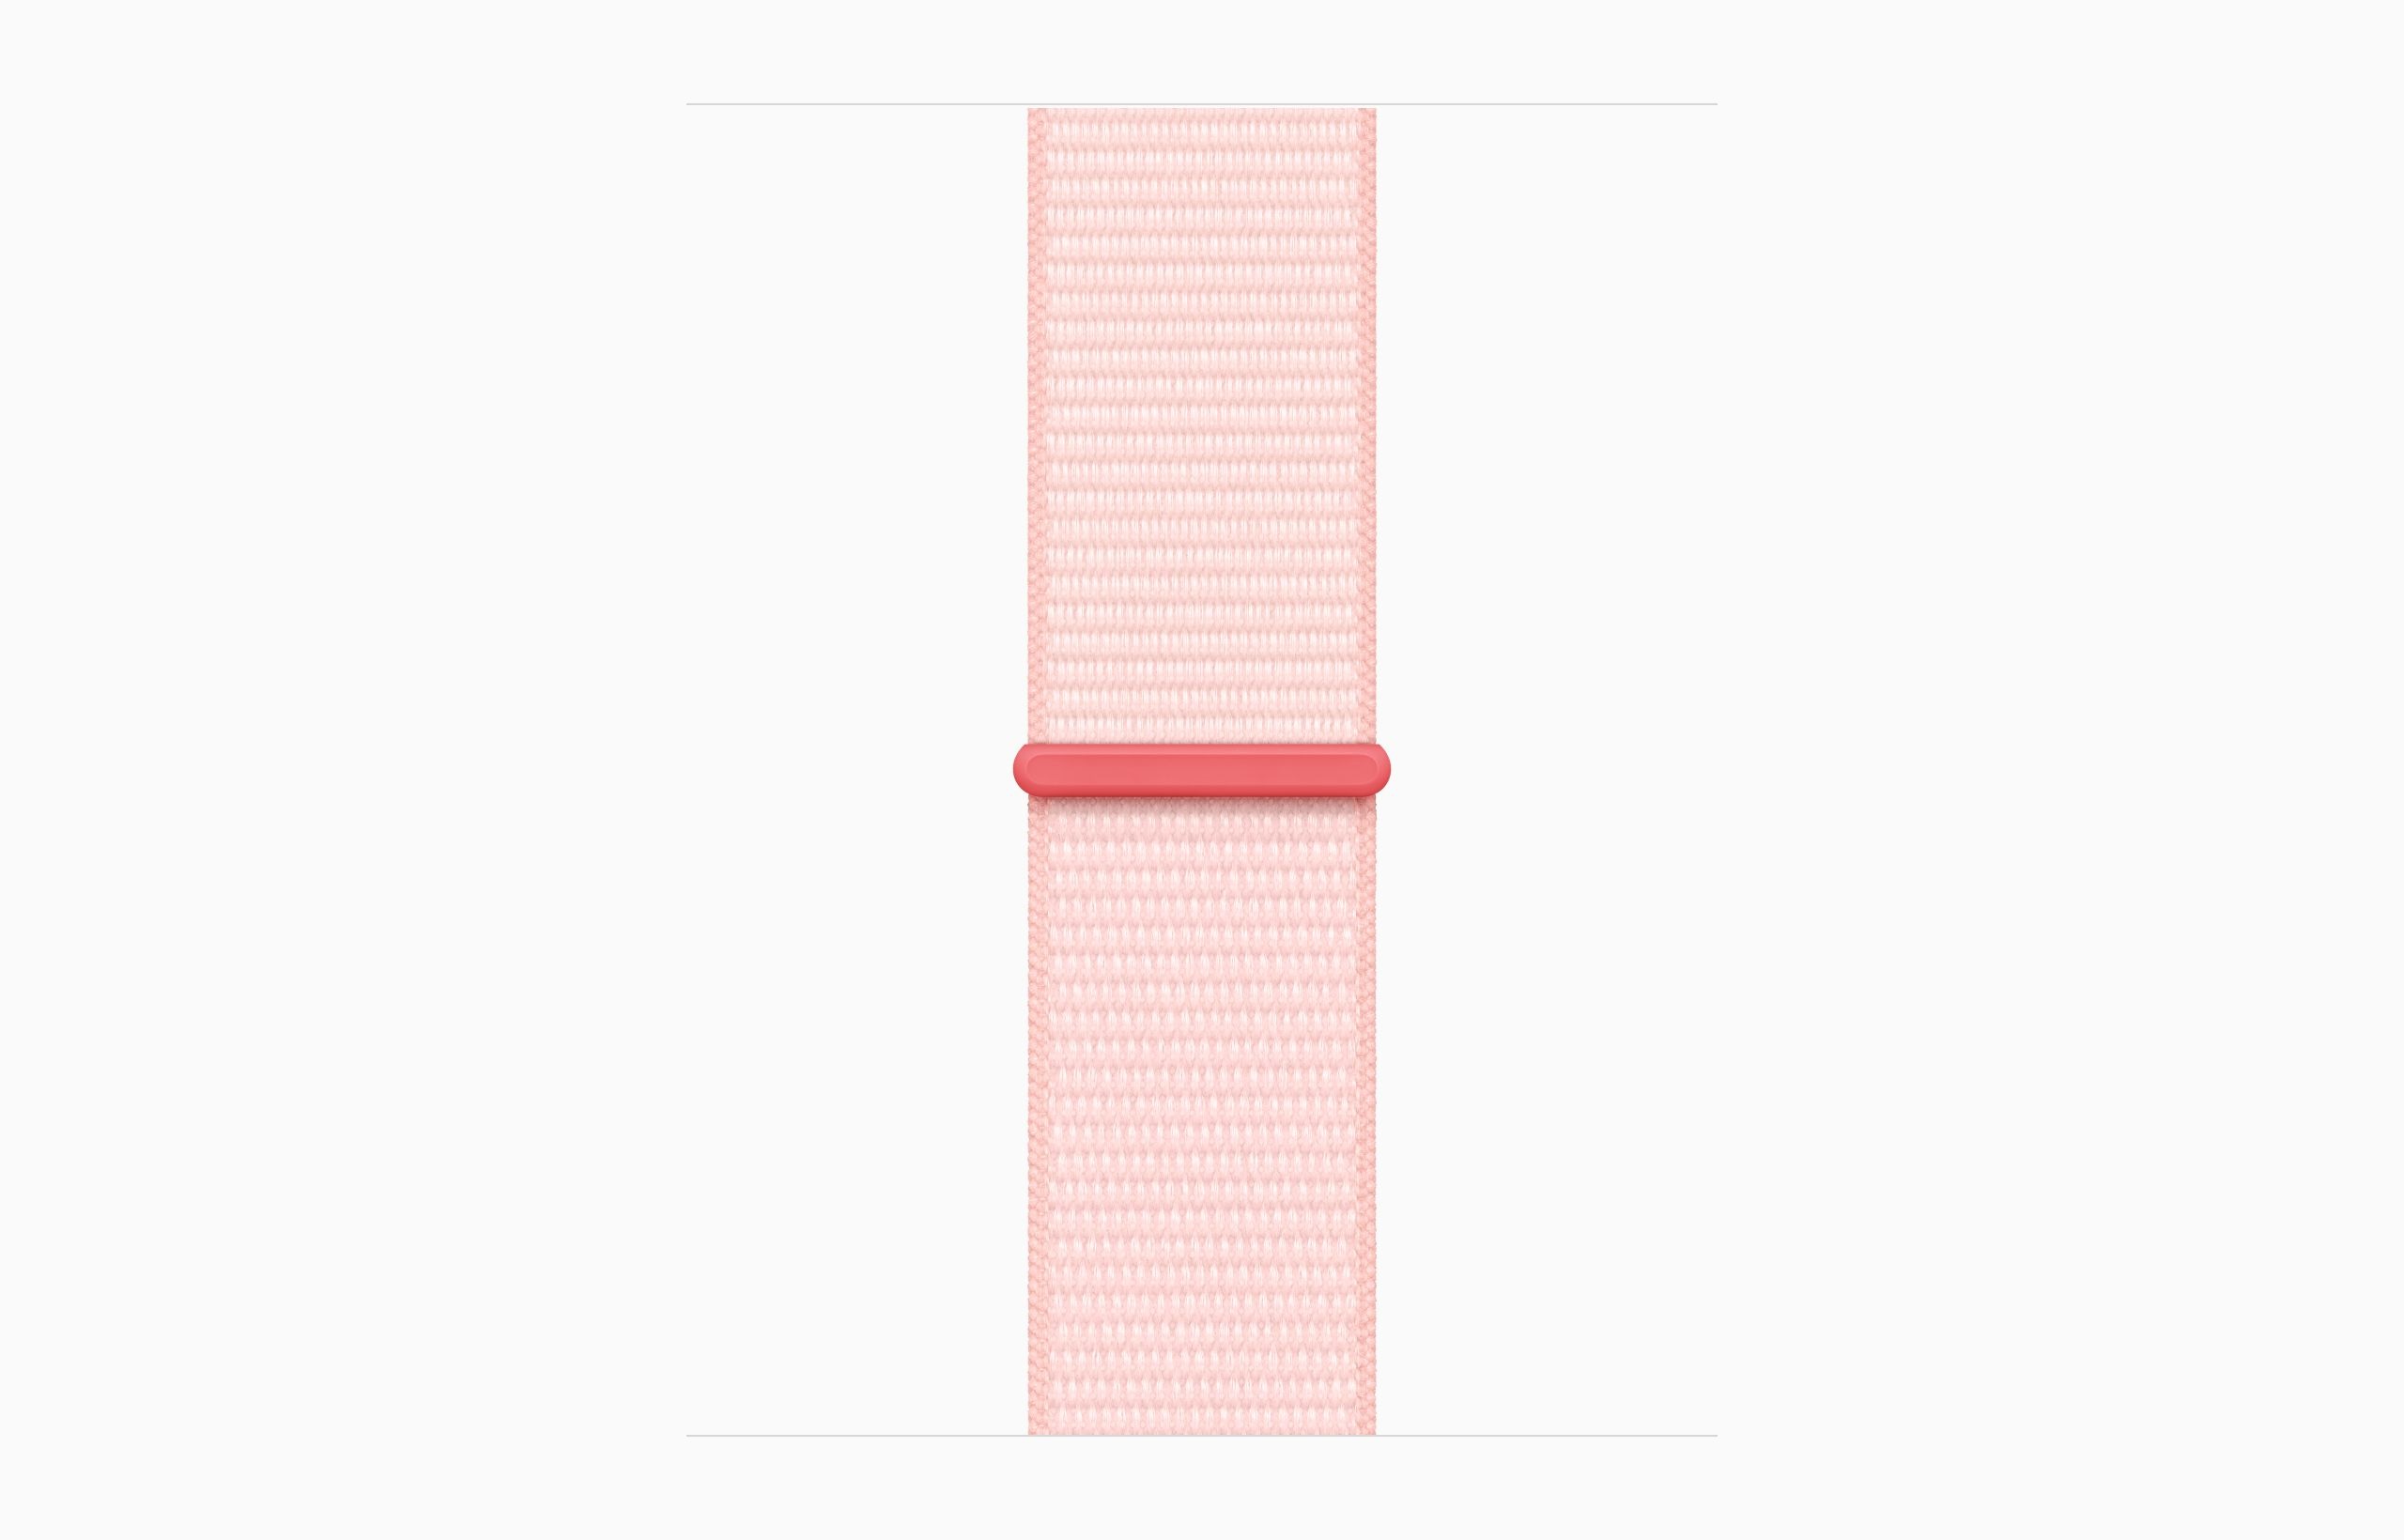 Obrázek Apple Watch S9/45mm/Pink/Sport Band/Light Pink